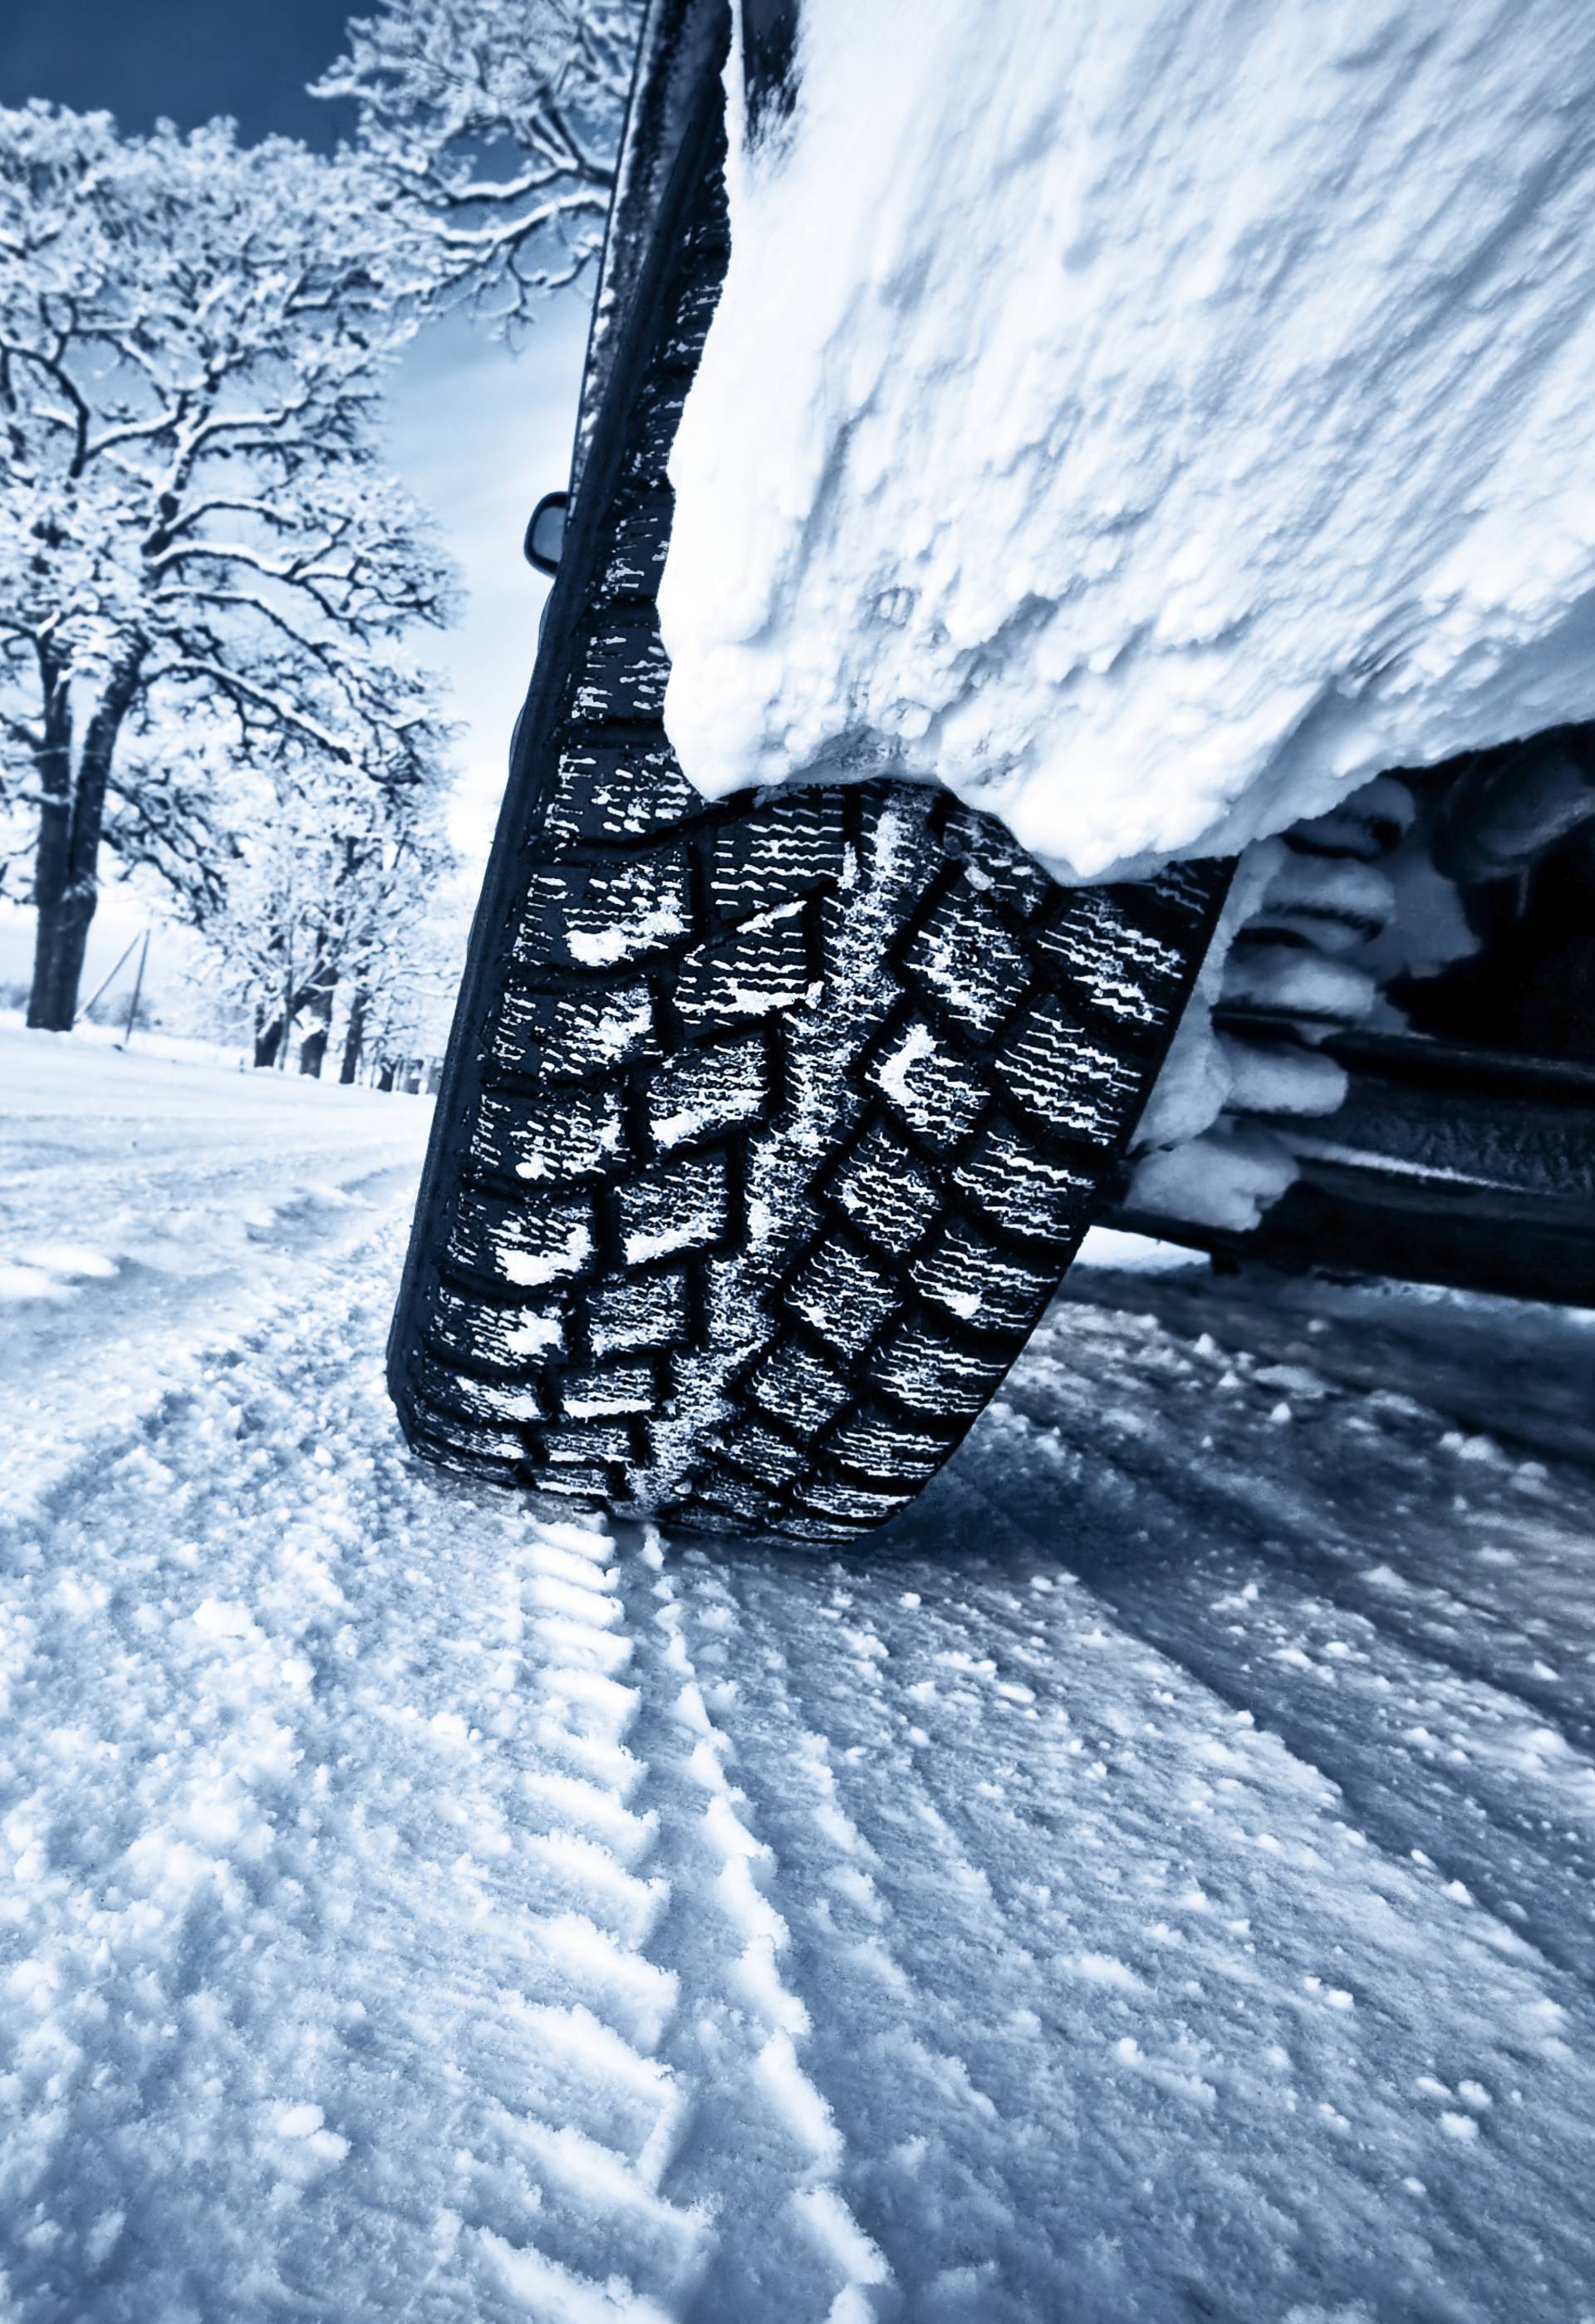 Sve što trebate znati o zimskoj opremi automobila: Mijenjanje, životni vijek i skladištenje guma